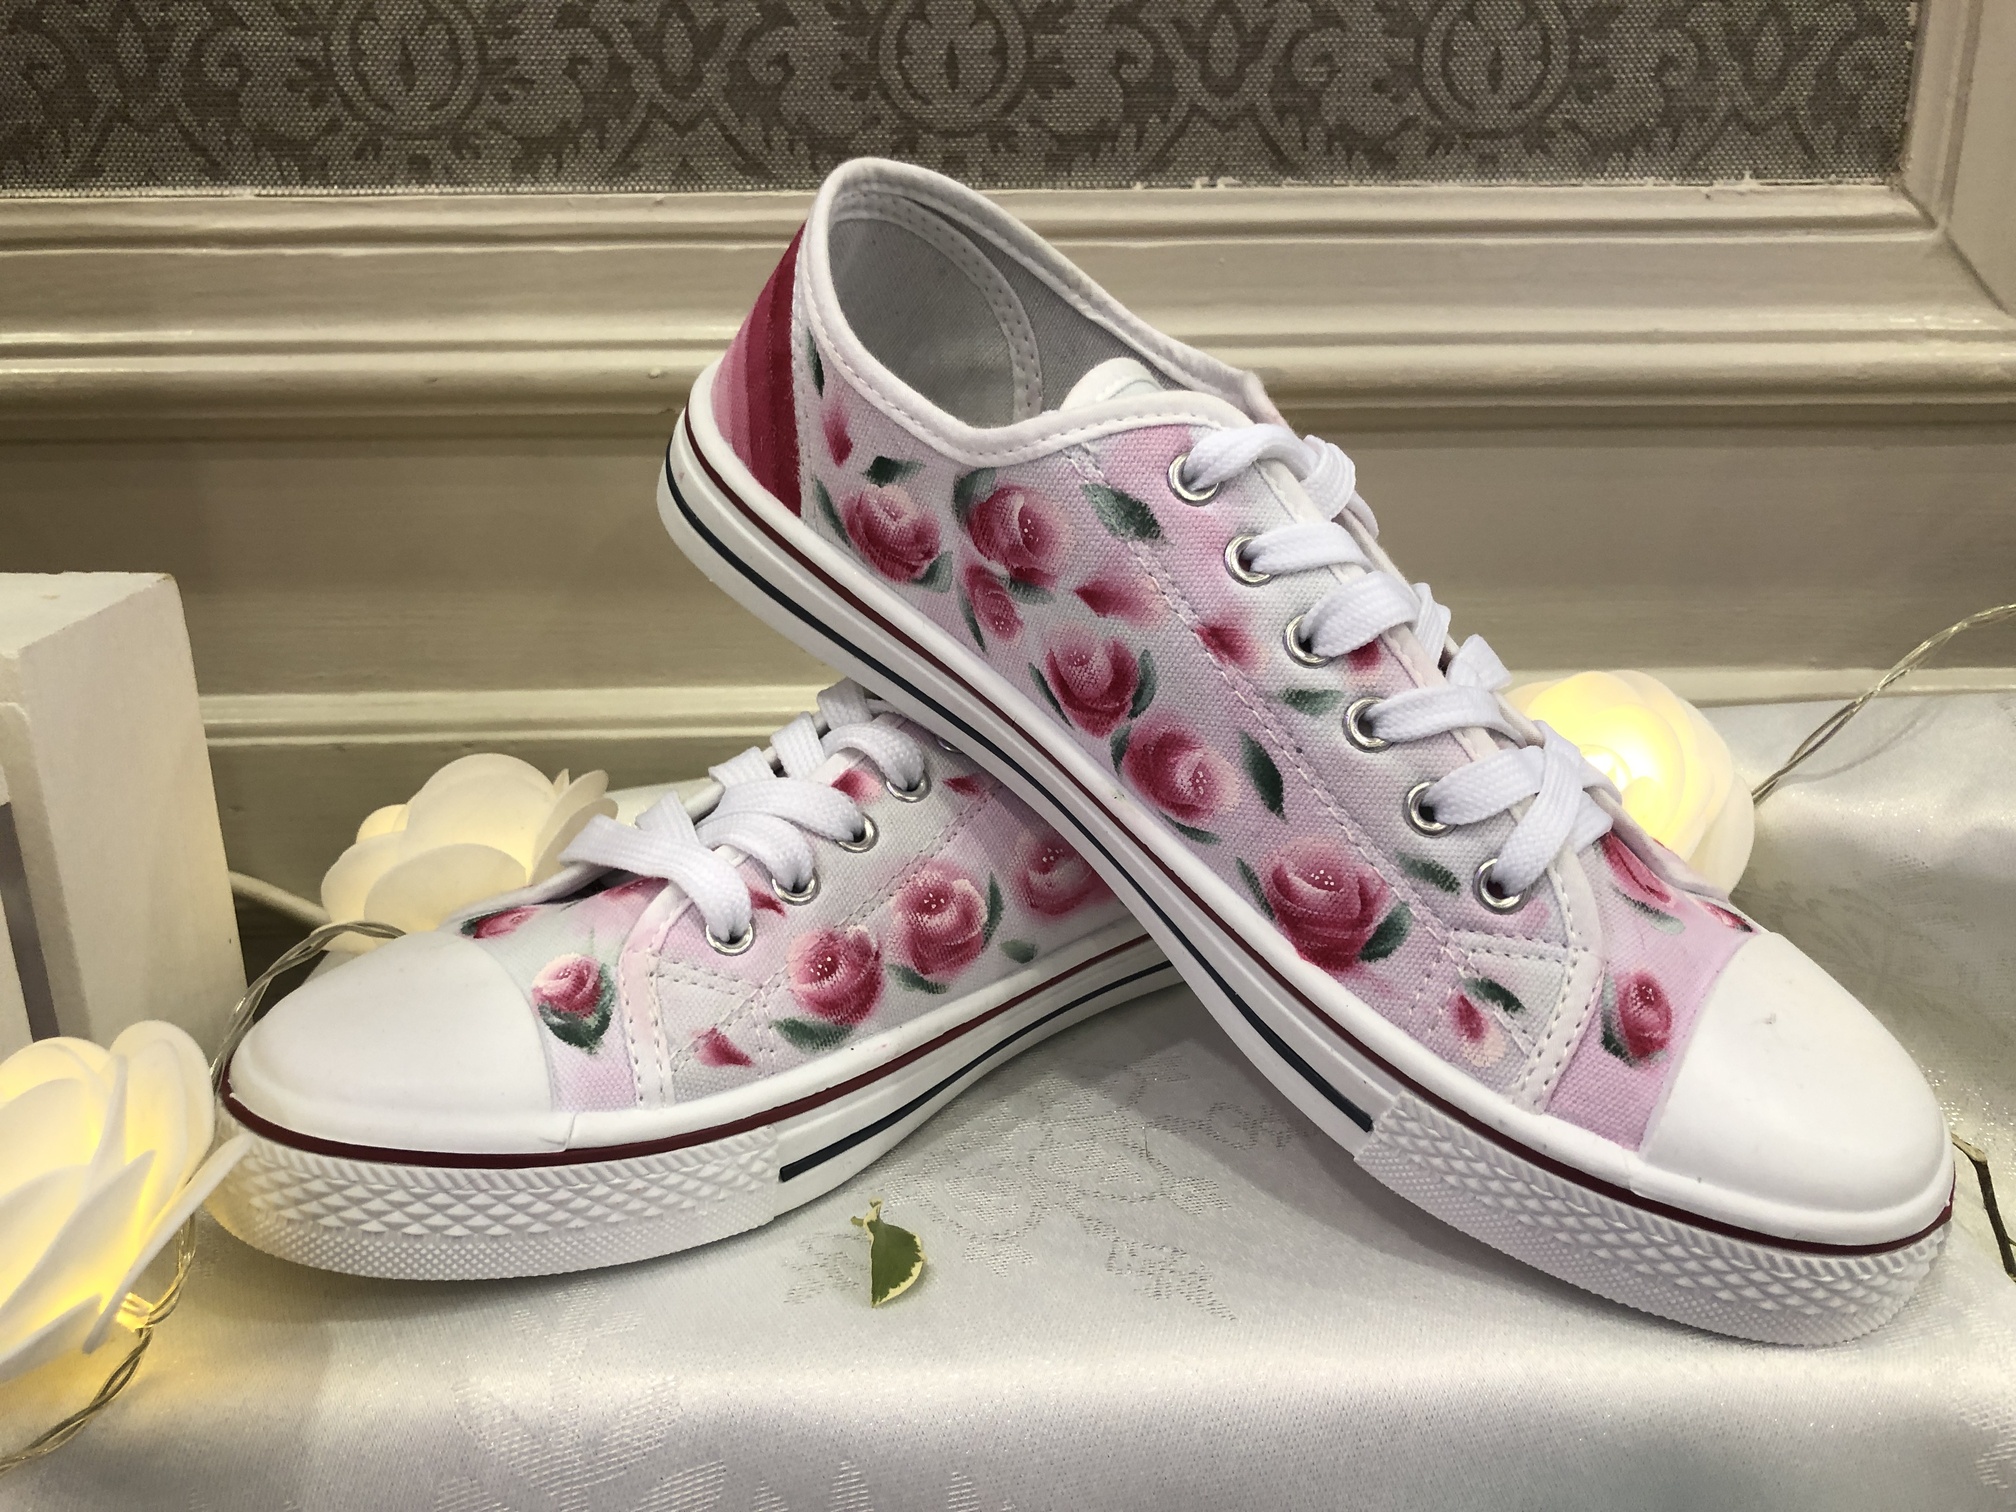 kyst Ødelægge tryllekunstner Rosebud Converse - The Pretty Wedding Shoe Company